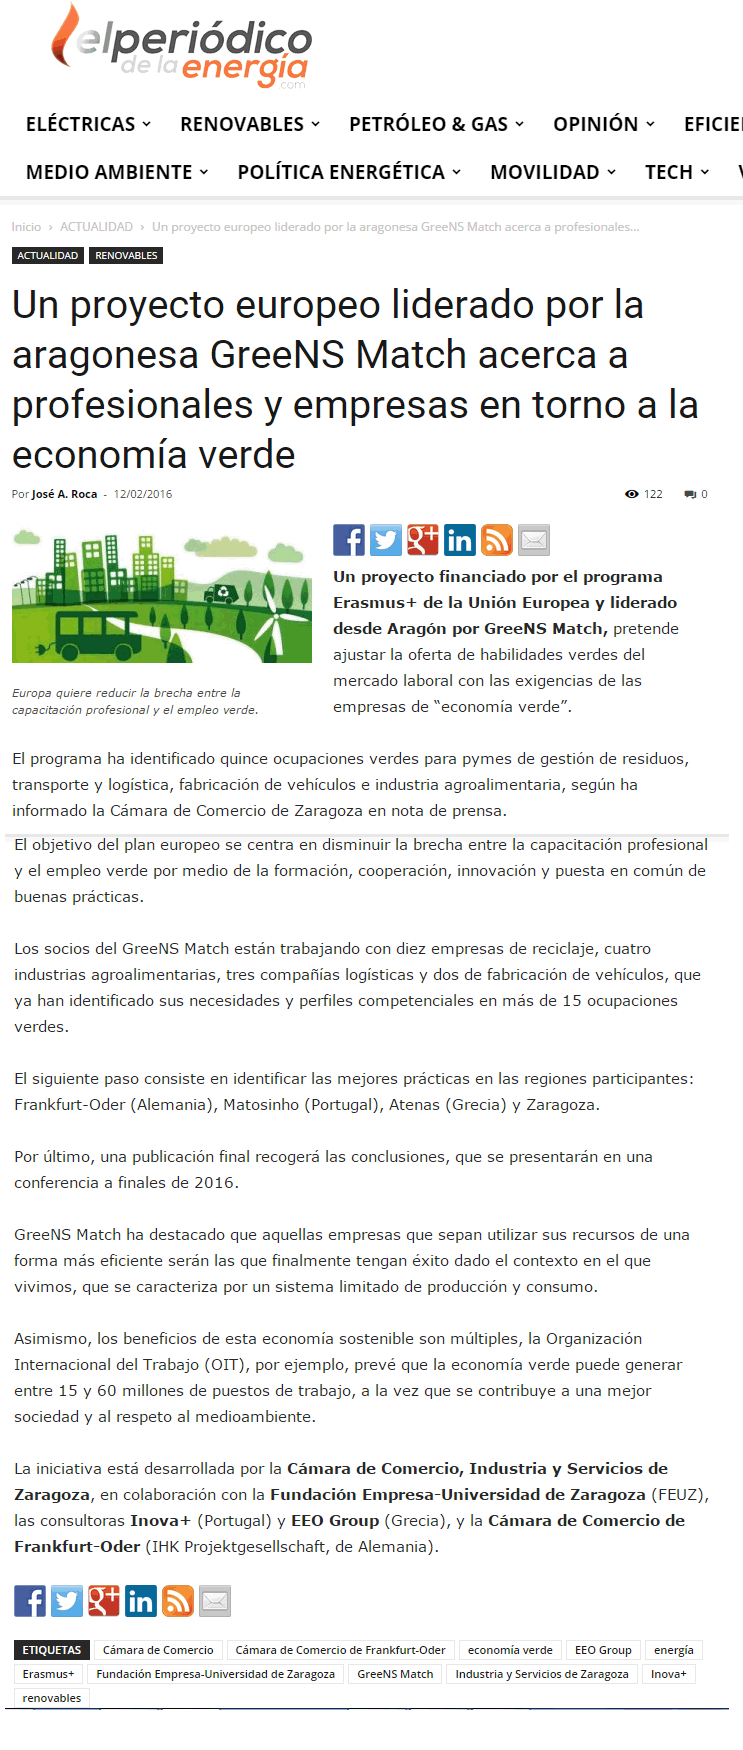 Noticias - El periodico de la energia (12/02/2016)